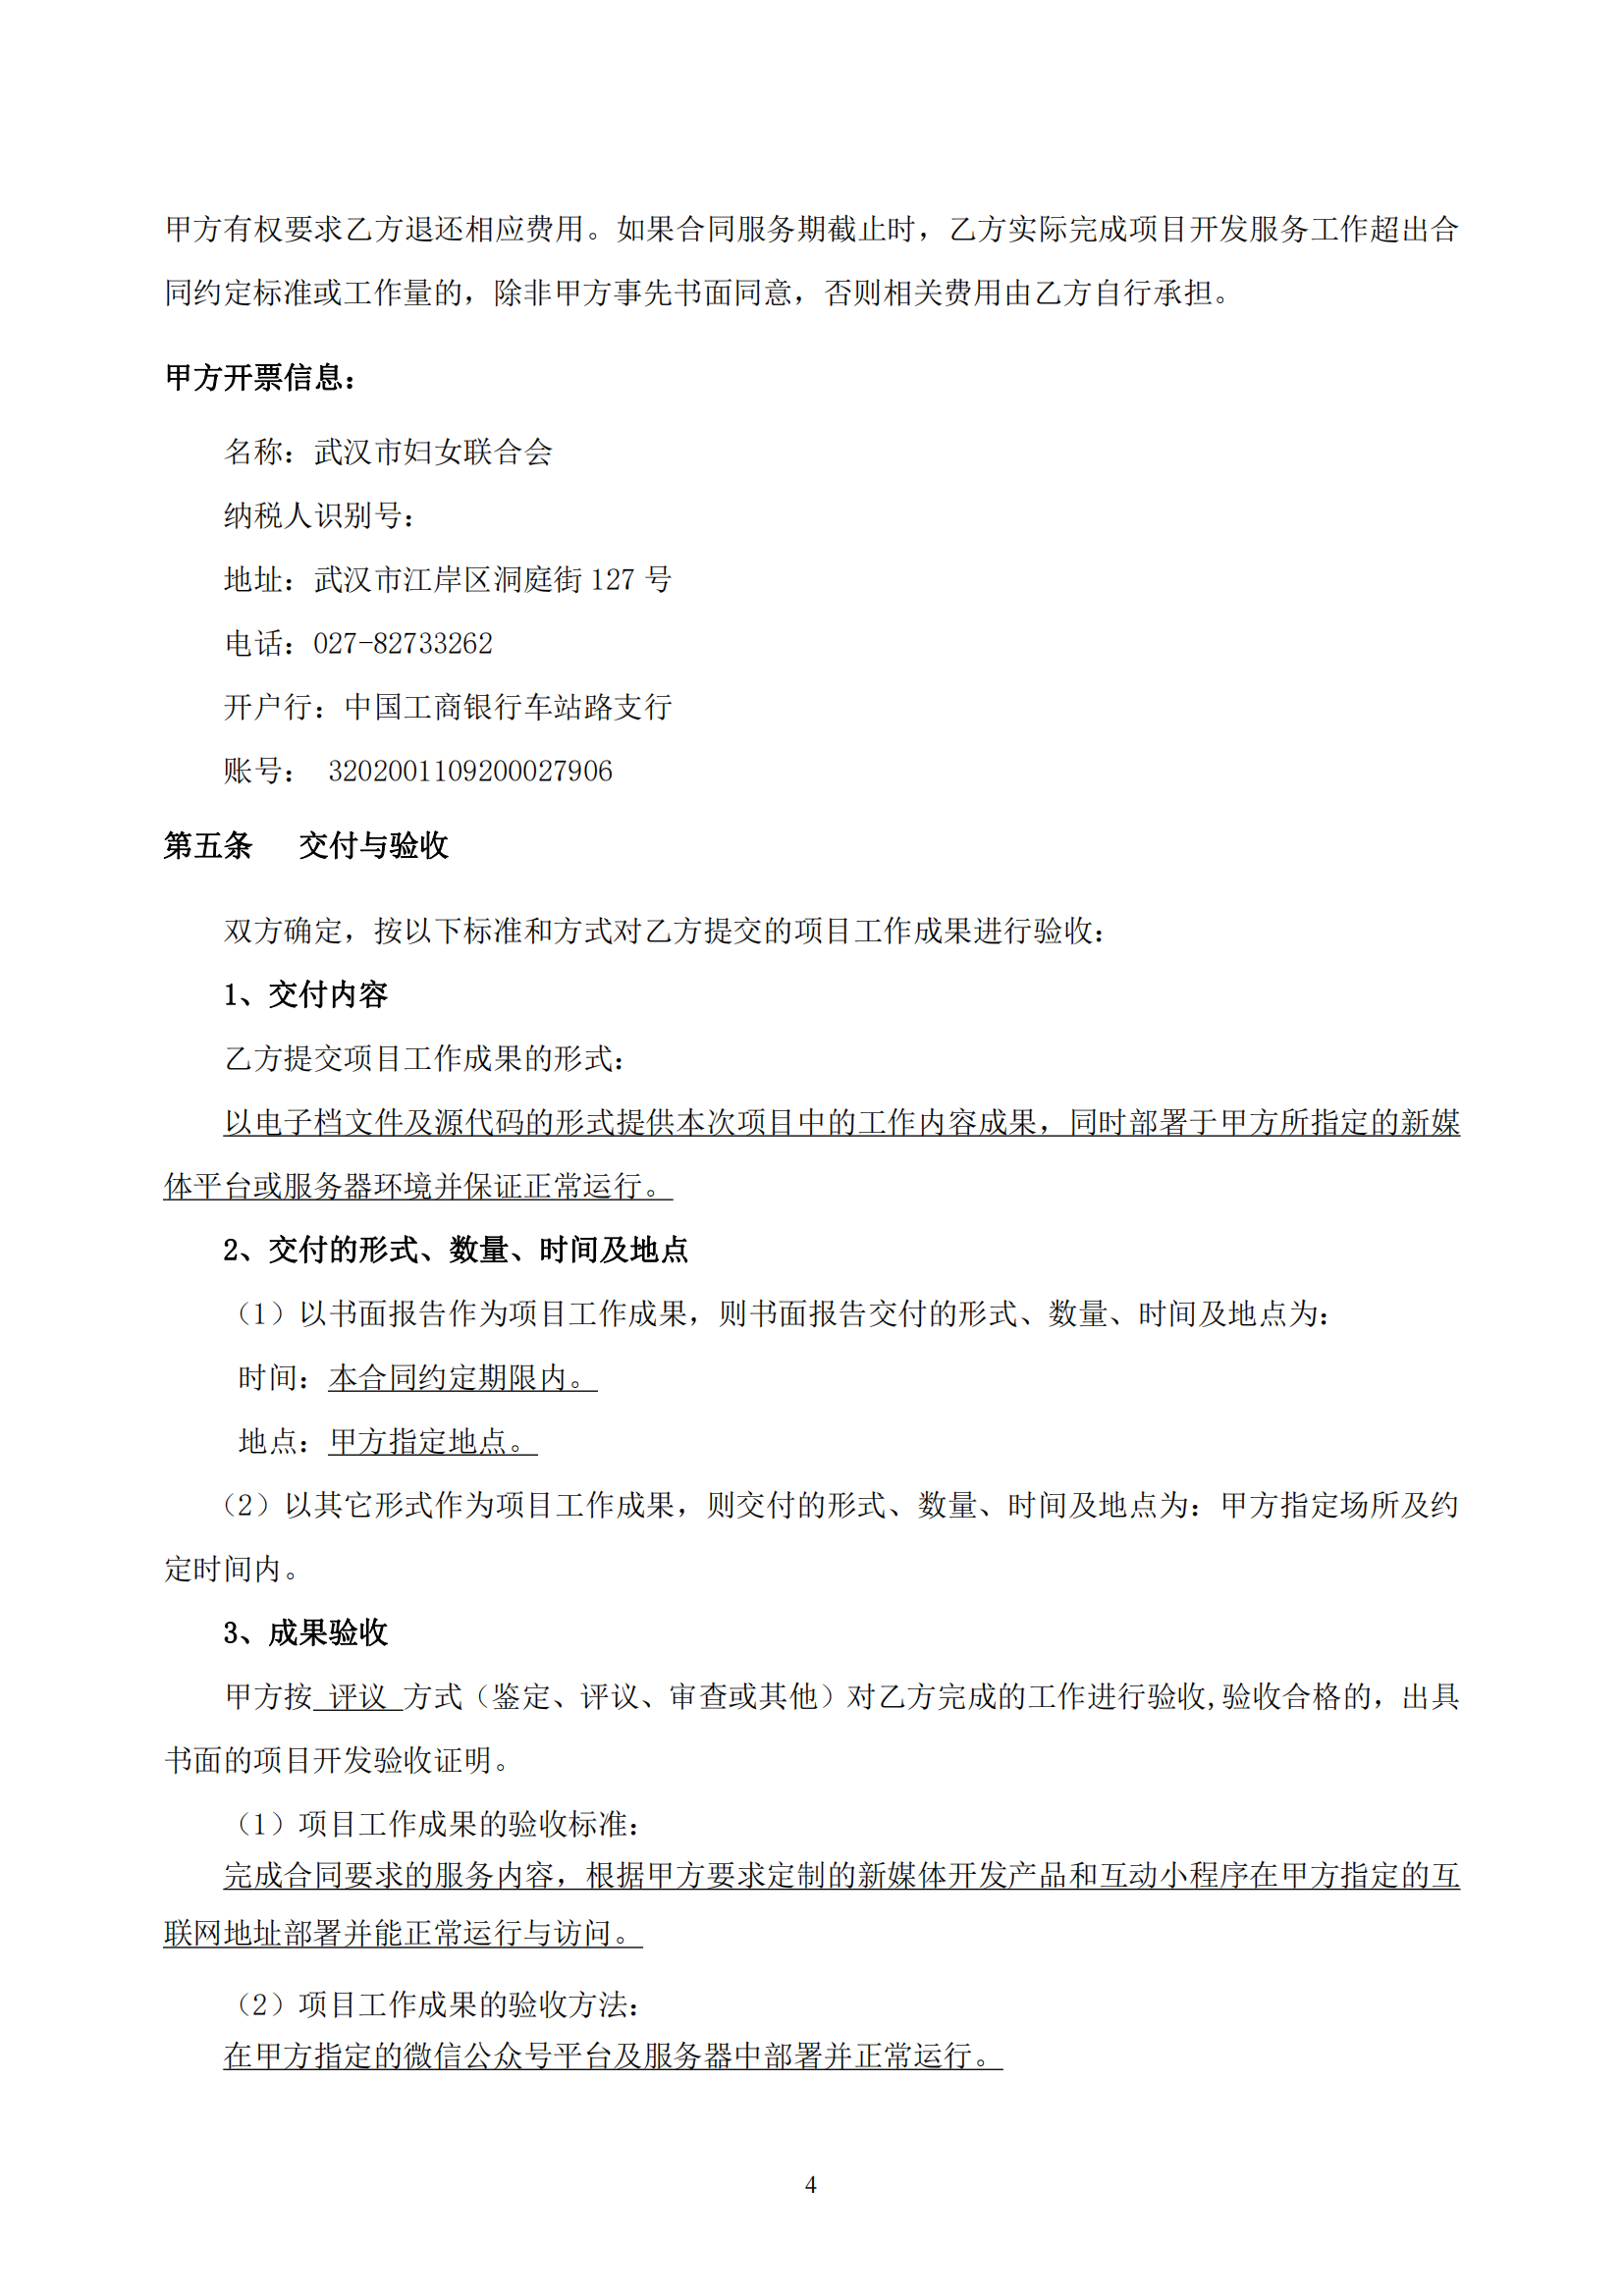 武汉妇联官方微信新媒体运维及改版升级项目合同_04.png